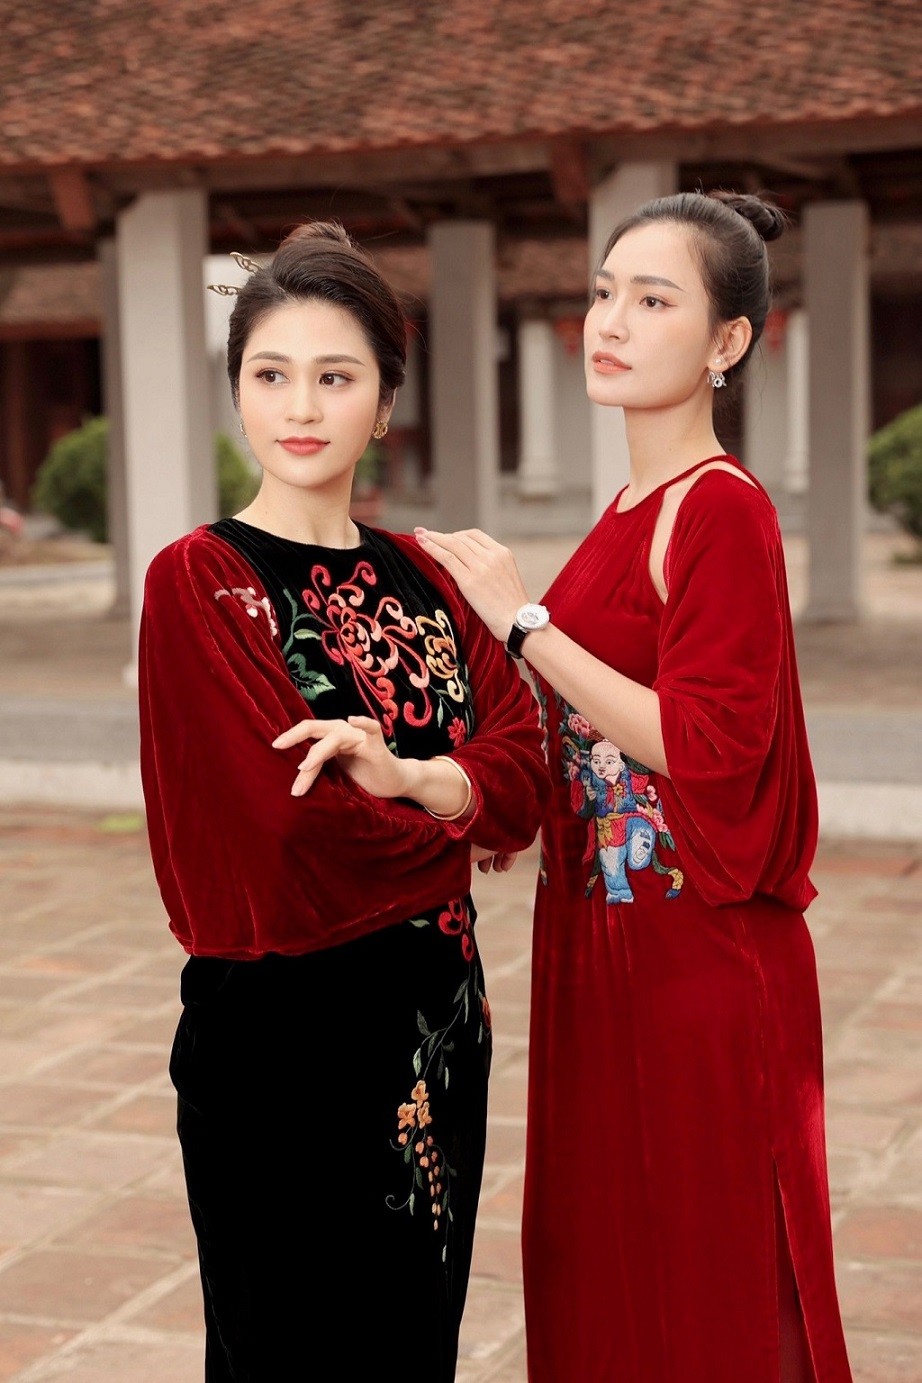 BTV Minh Trang và BTV Linh Thủy là hai gương mặt không xa lạ với khán giả yêu thích chương trình Thời sự trên sóng VTV. Cả hai ghi điểm với gương mặt xinh đẹp cùng lối dẫn duyên dáng.